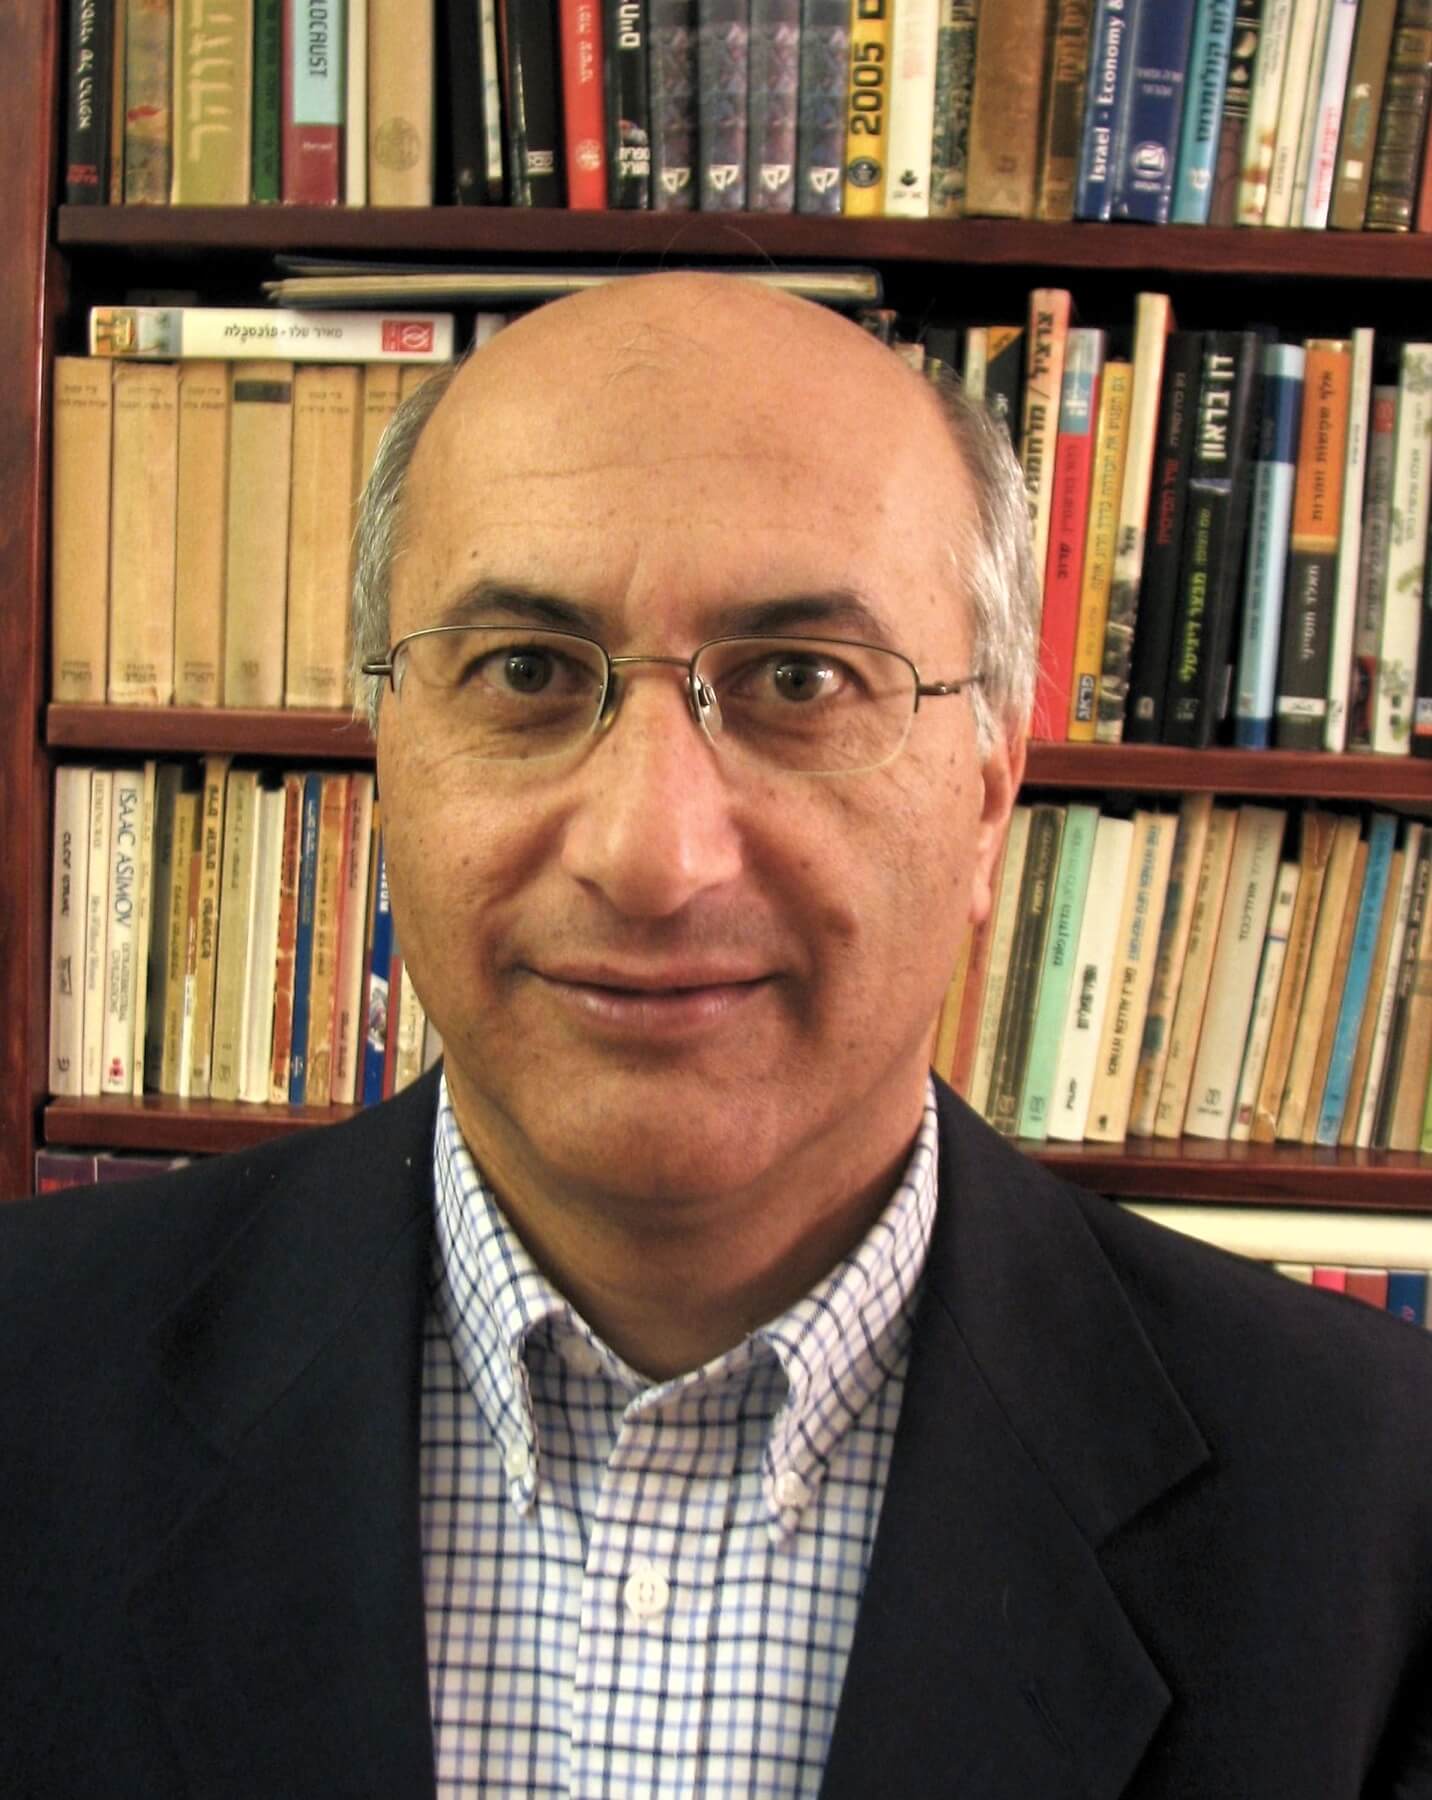 البروفيسور شلومو مجديسي، من معهد الكيمياء ومركز علوم النانو وتكنولوجيا النانو في الجامعة العبرية